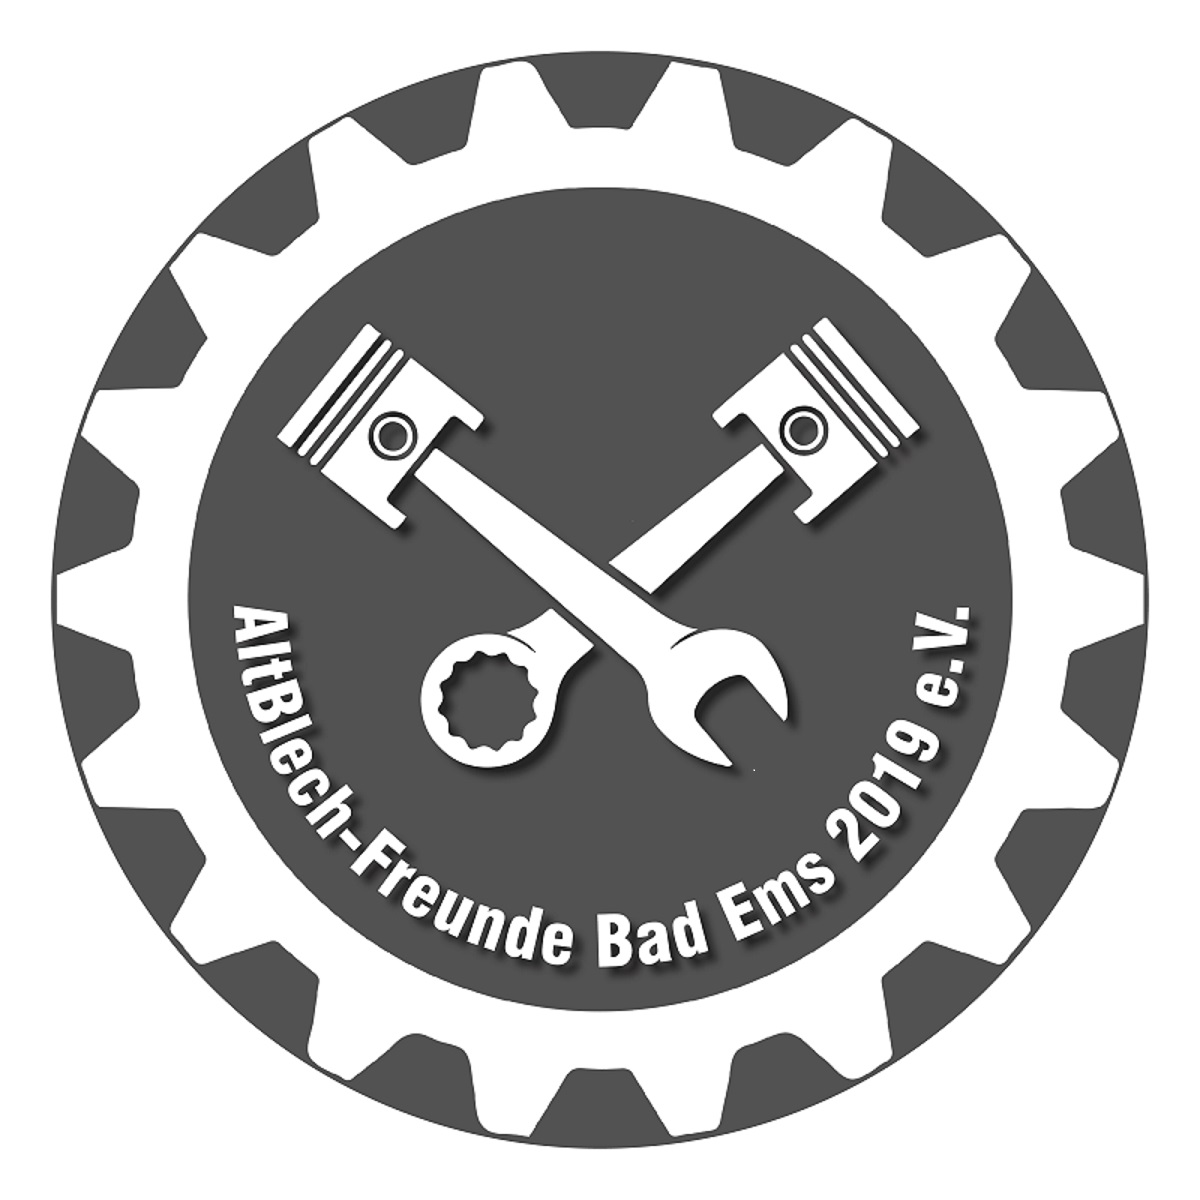 AltBlech-Freunde Bad Ems e.V. Logo